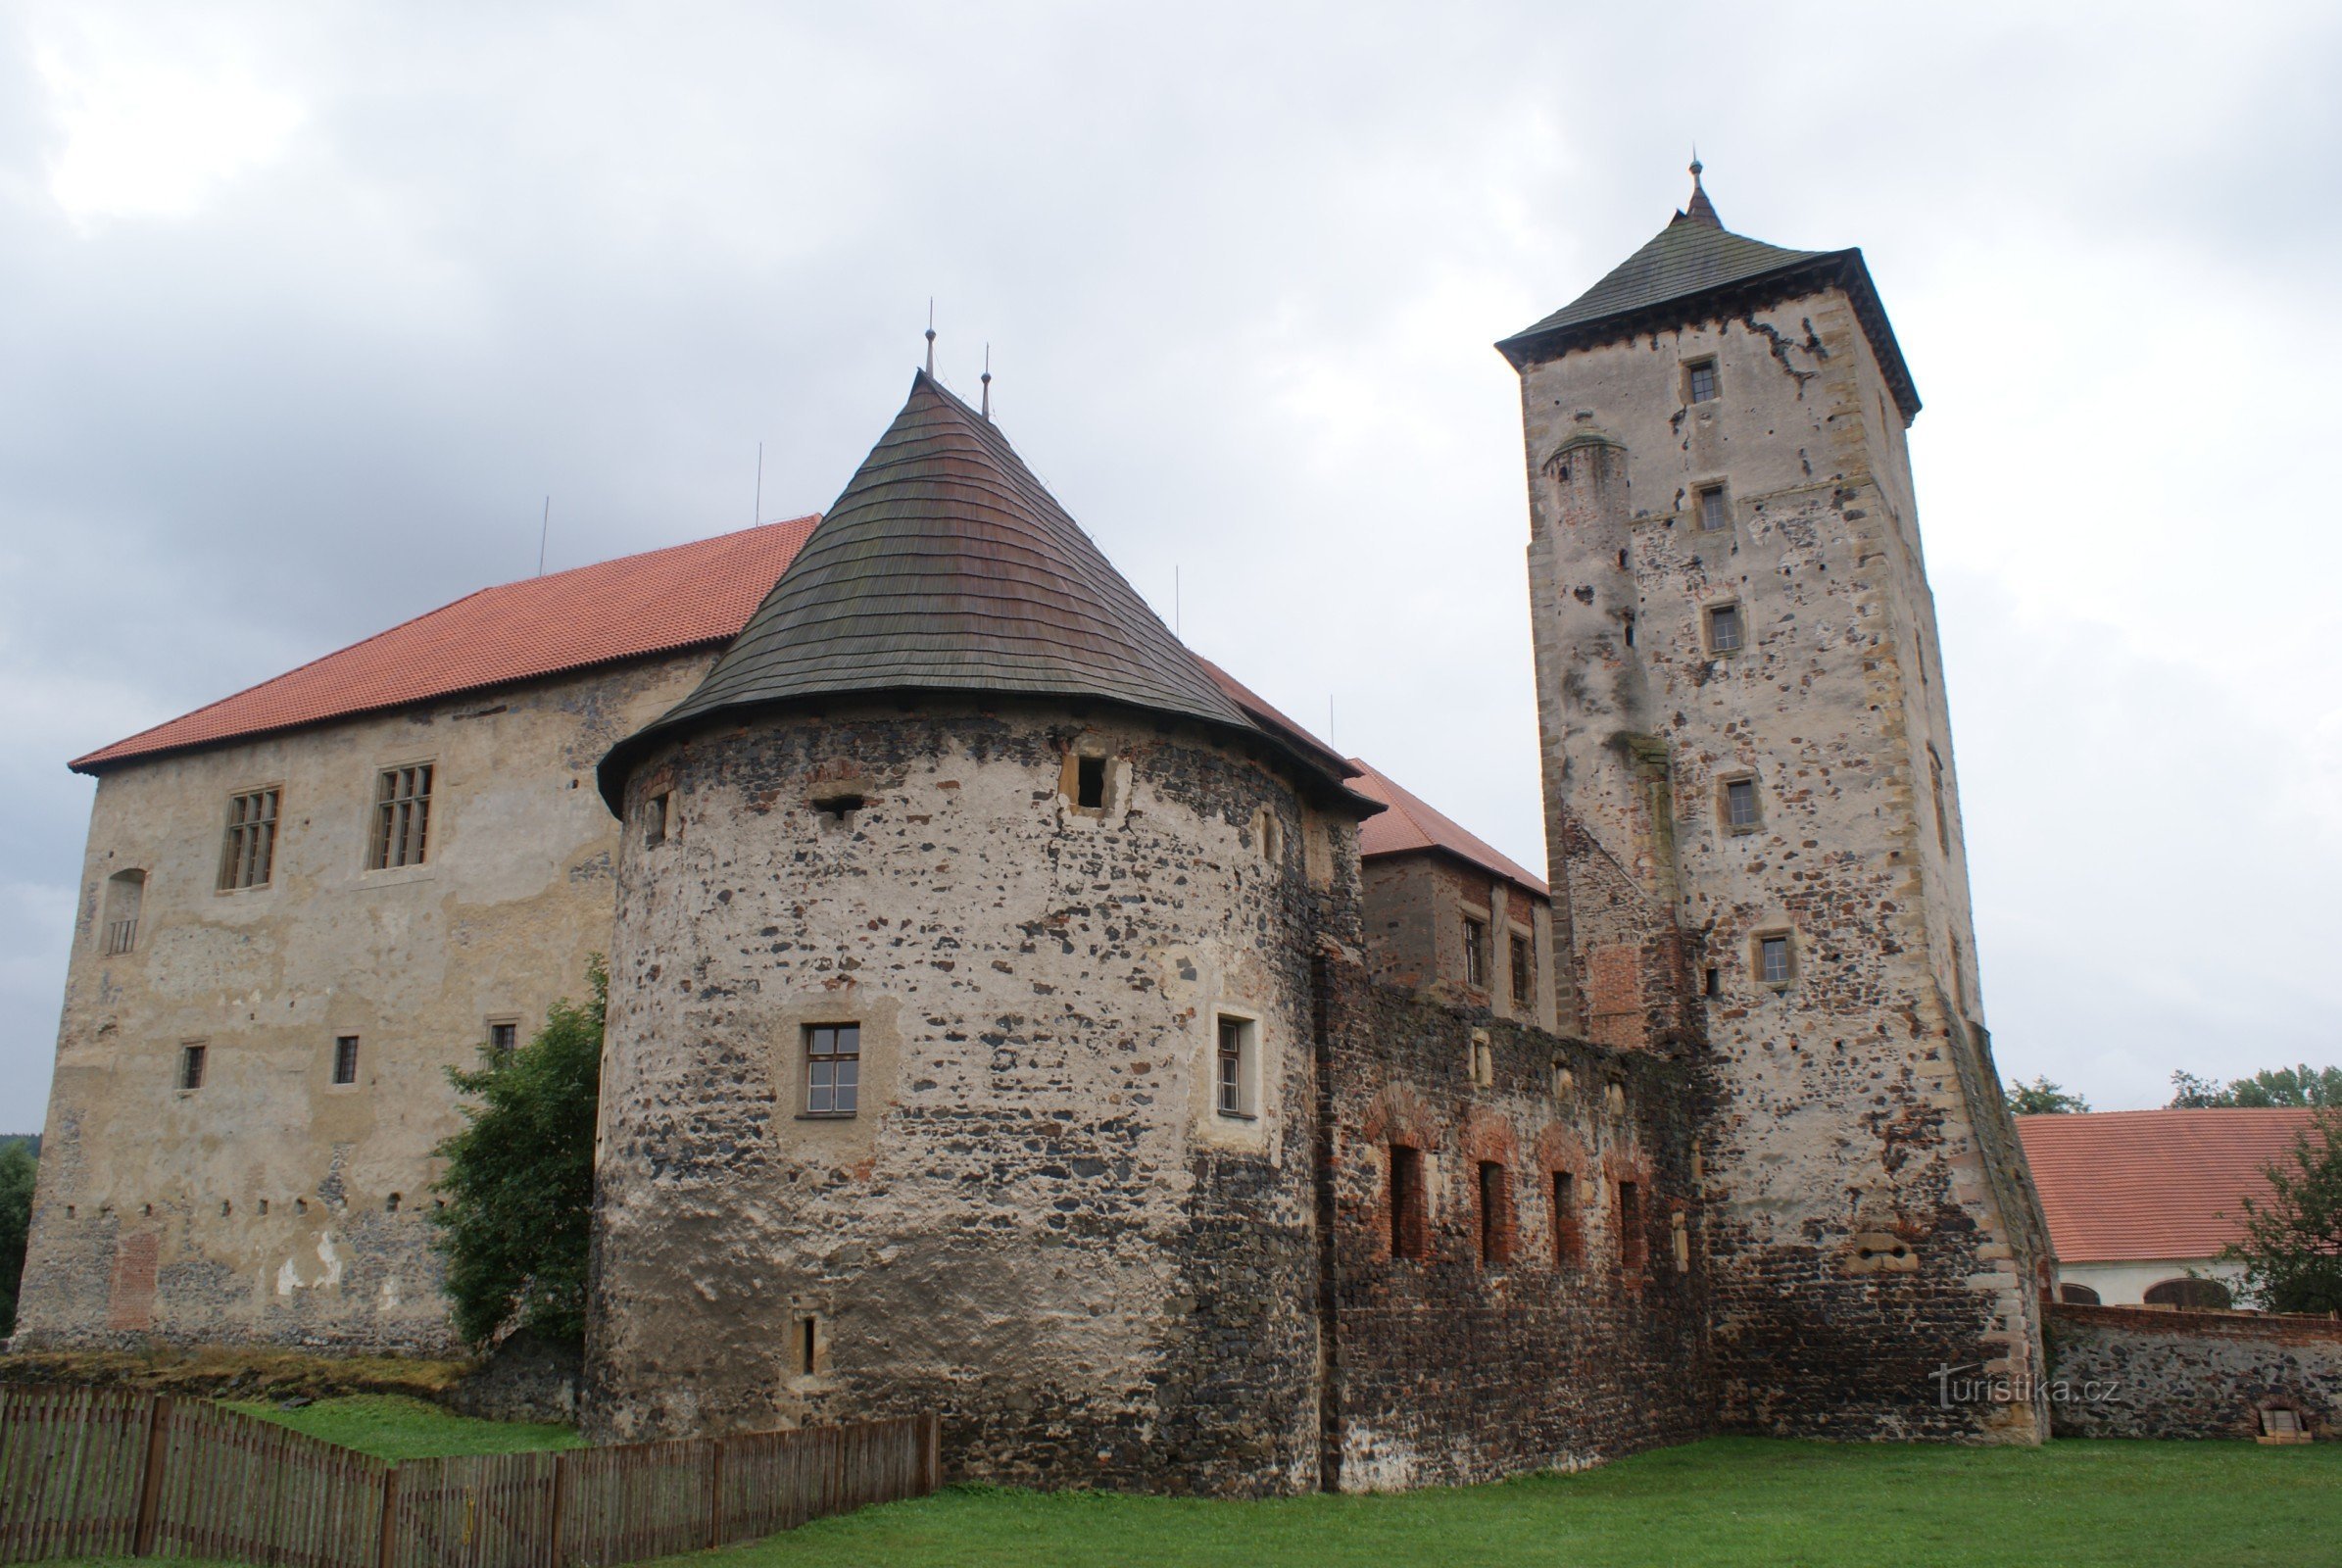 Švihov - eine Wasserburg und eine Perle der Festungsarchitektur (Geschichte und Aussehen der Burg)